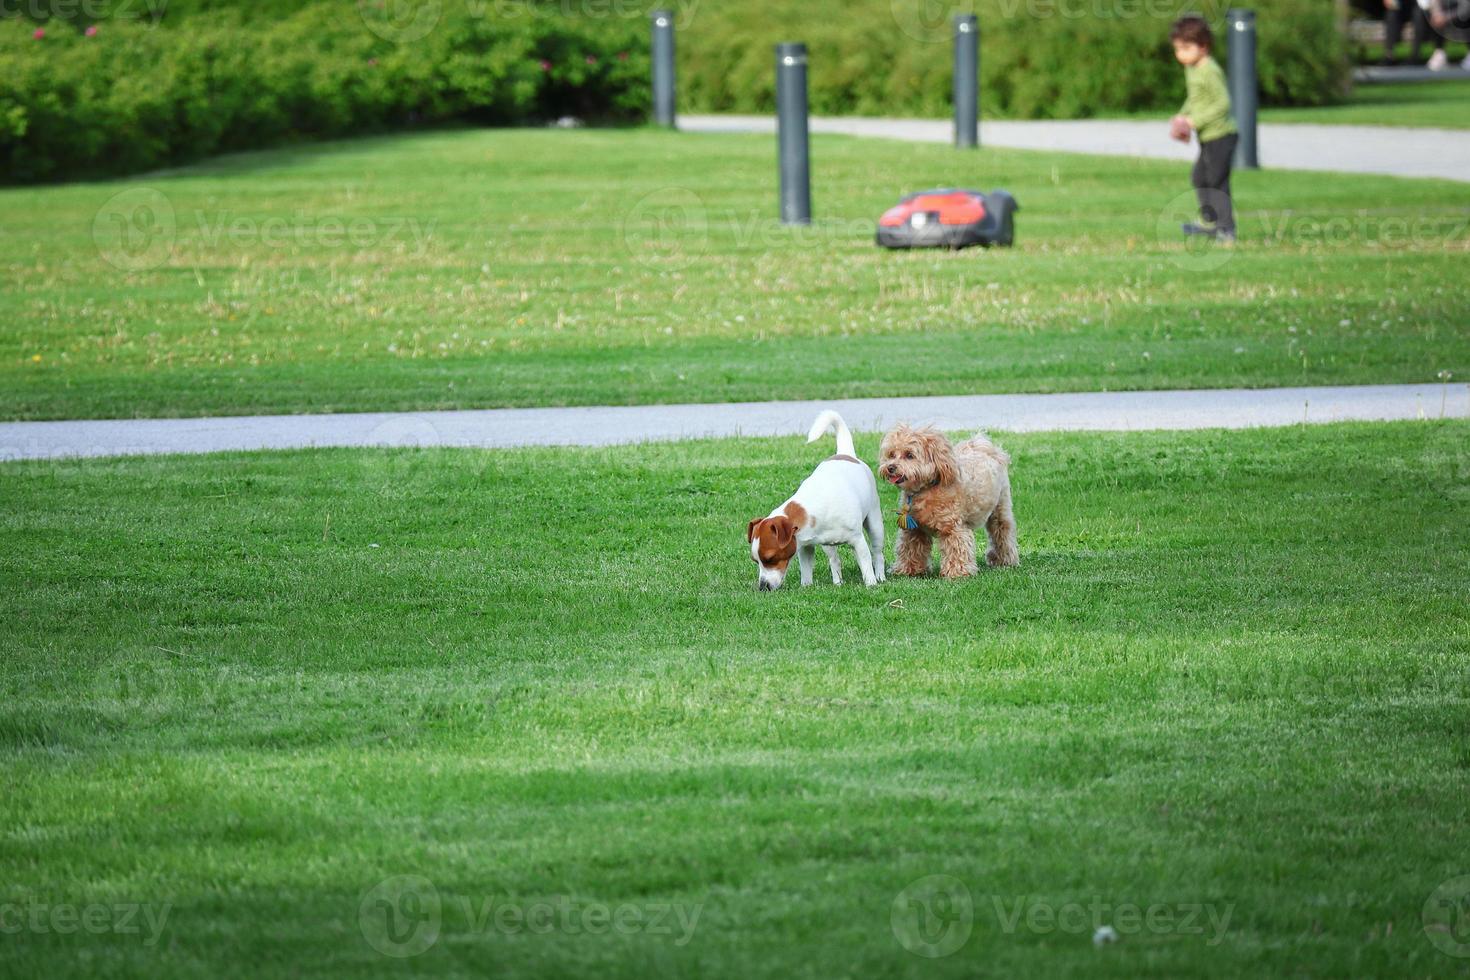 perros pequeños persiguiéndose unos a otros jugando en un césped